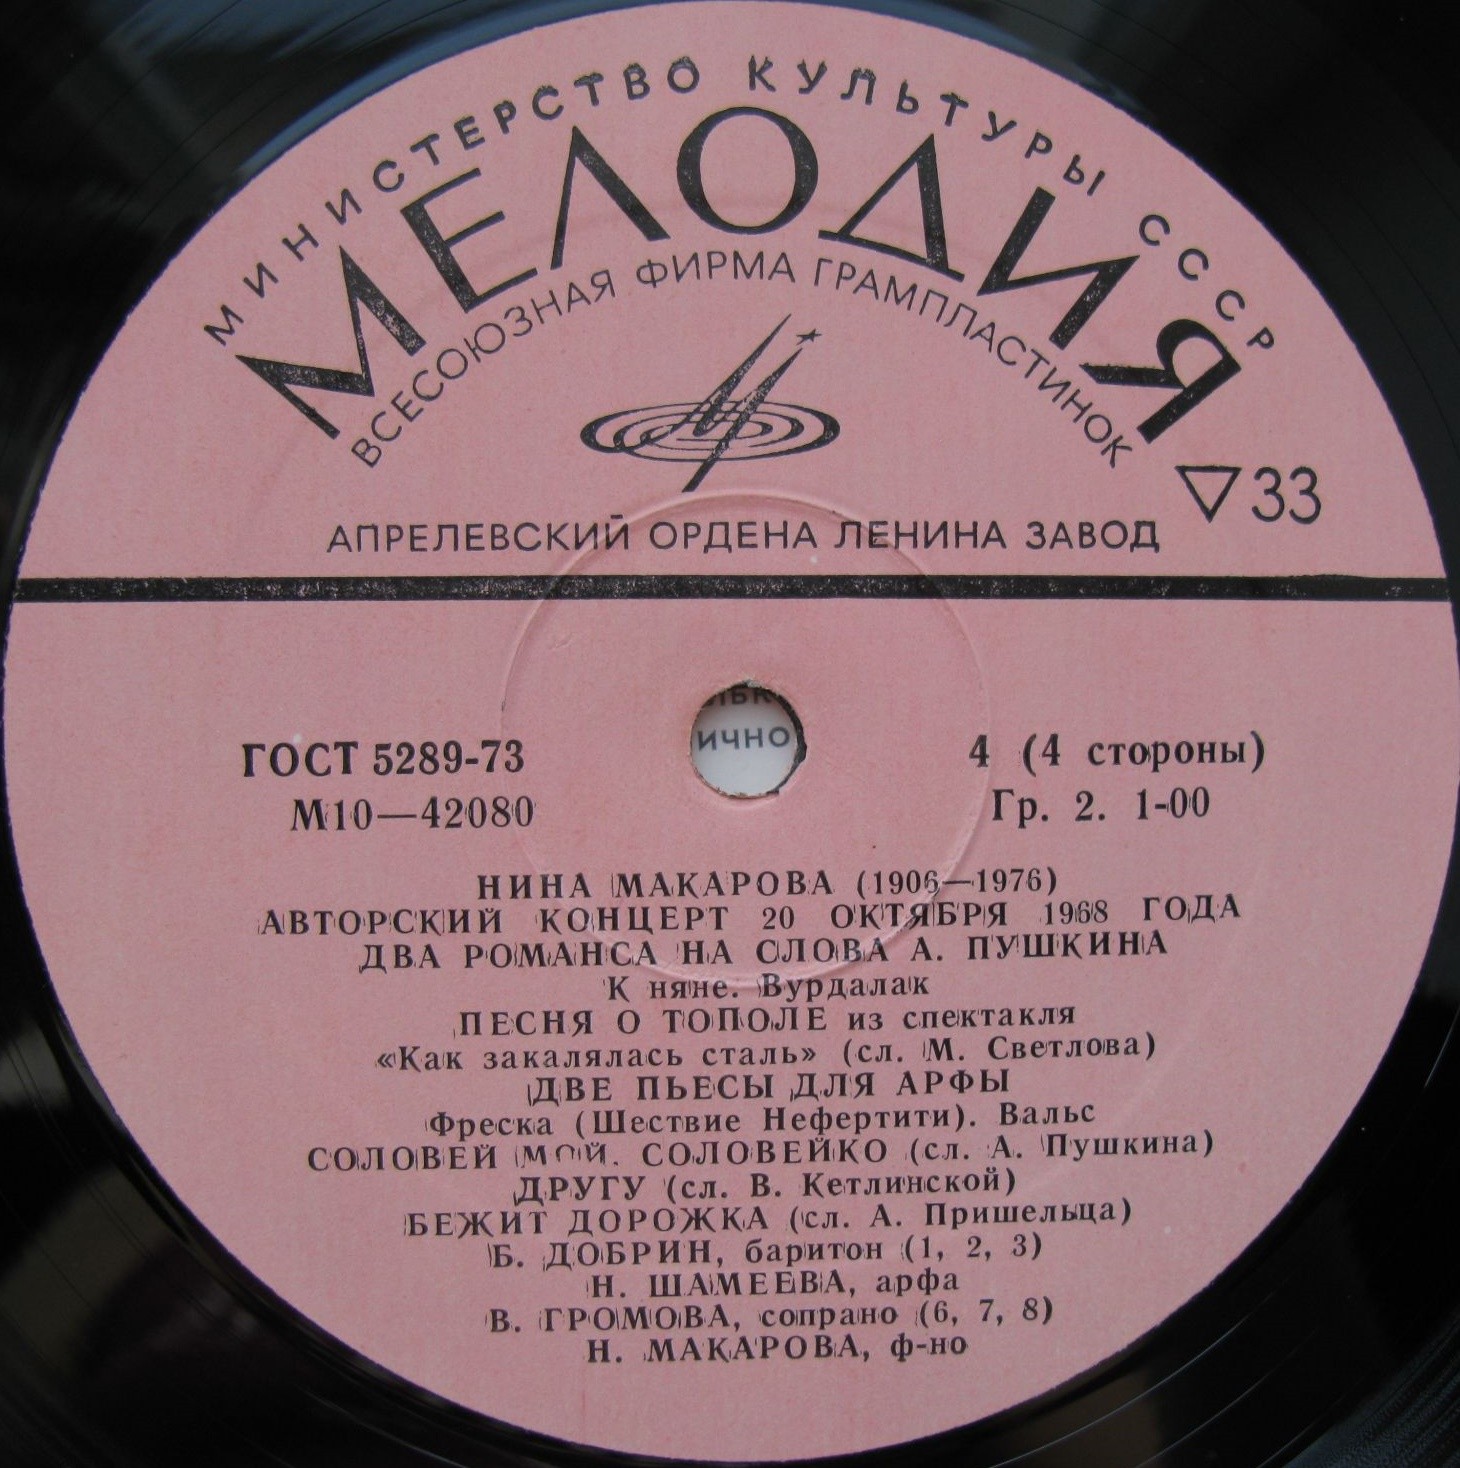 Нина МАКАРОВА. Авторский концерт 20 октября 1968 г. Малый зал Московской консерватории